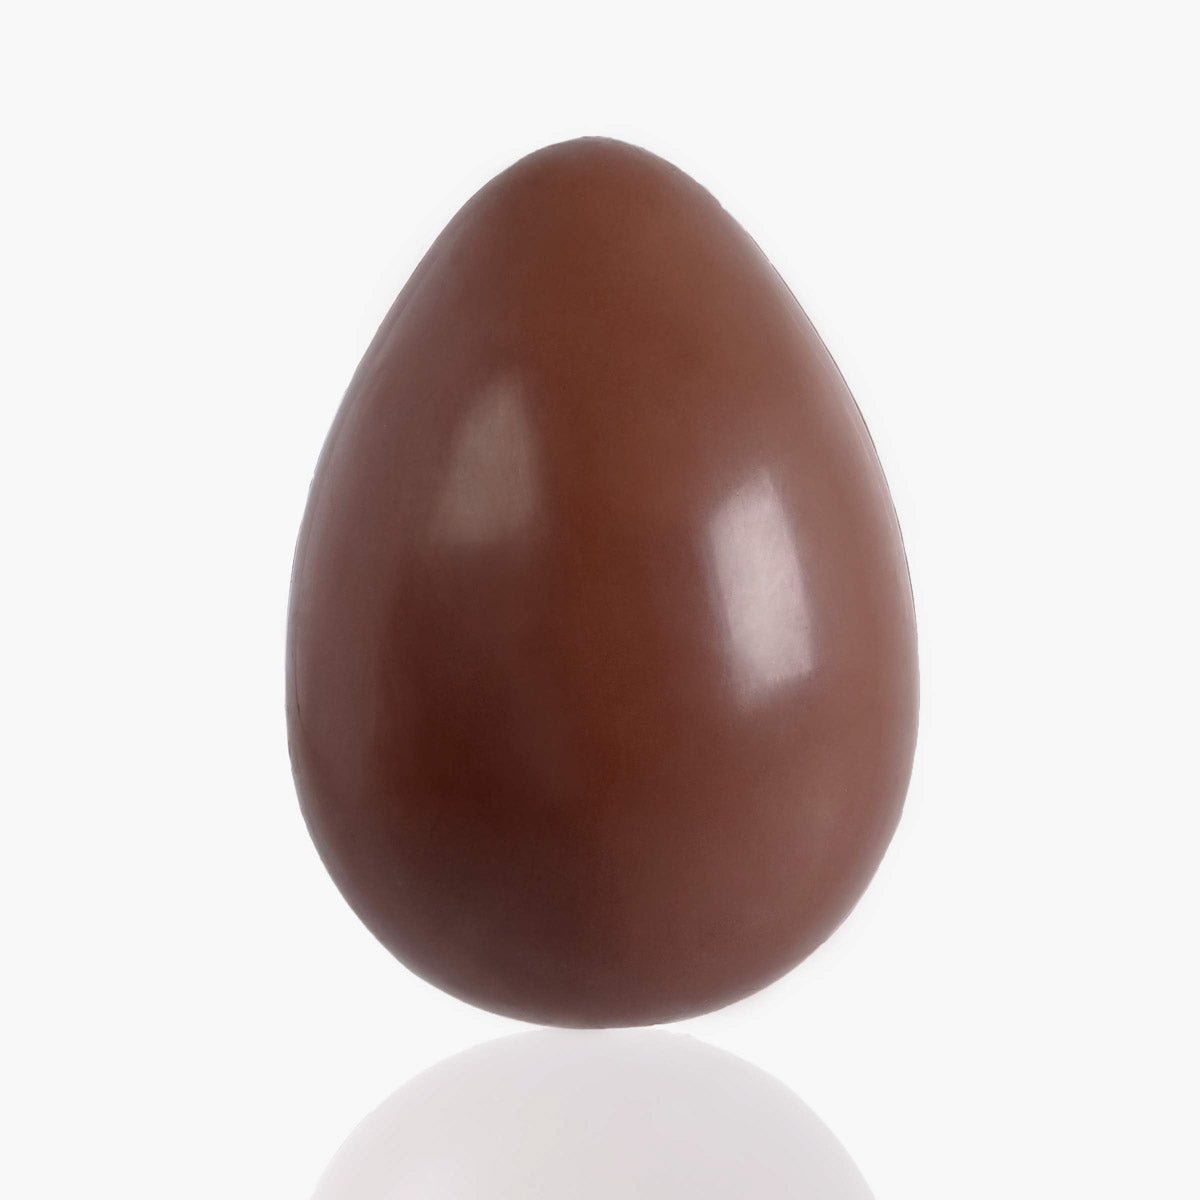 Huevo de pascua de chocolate con leche liso